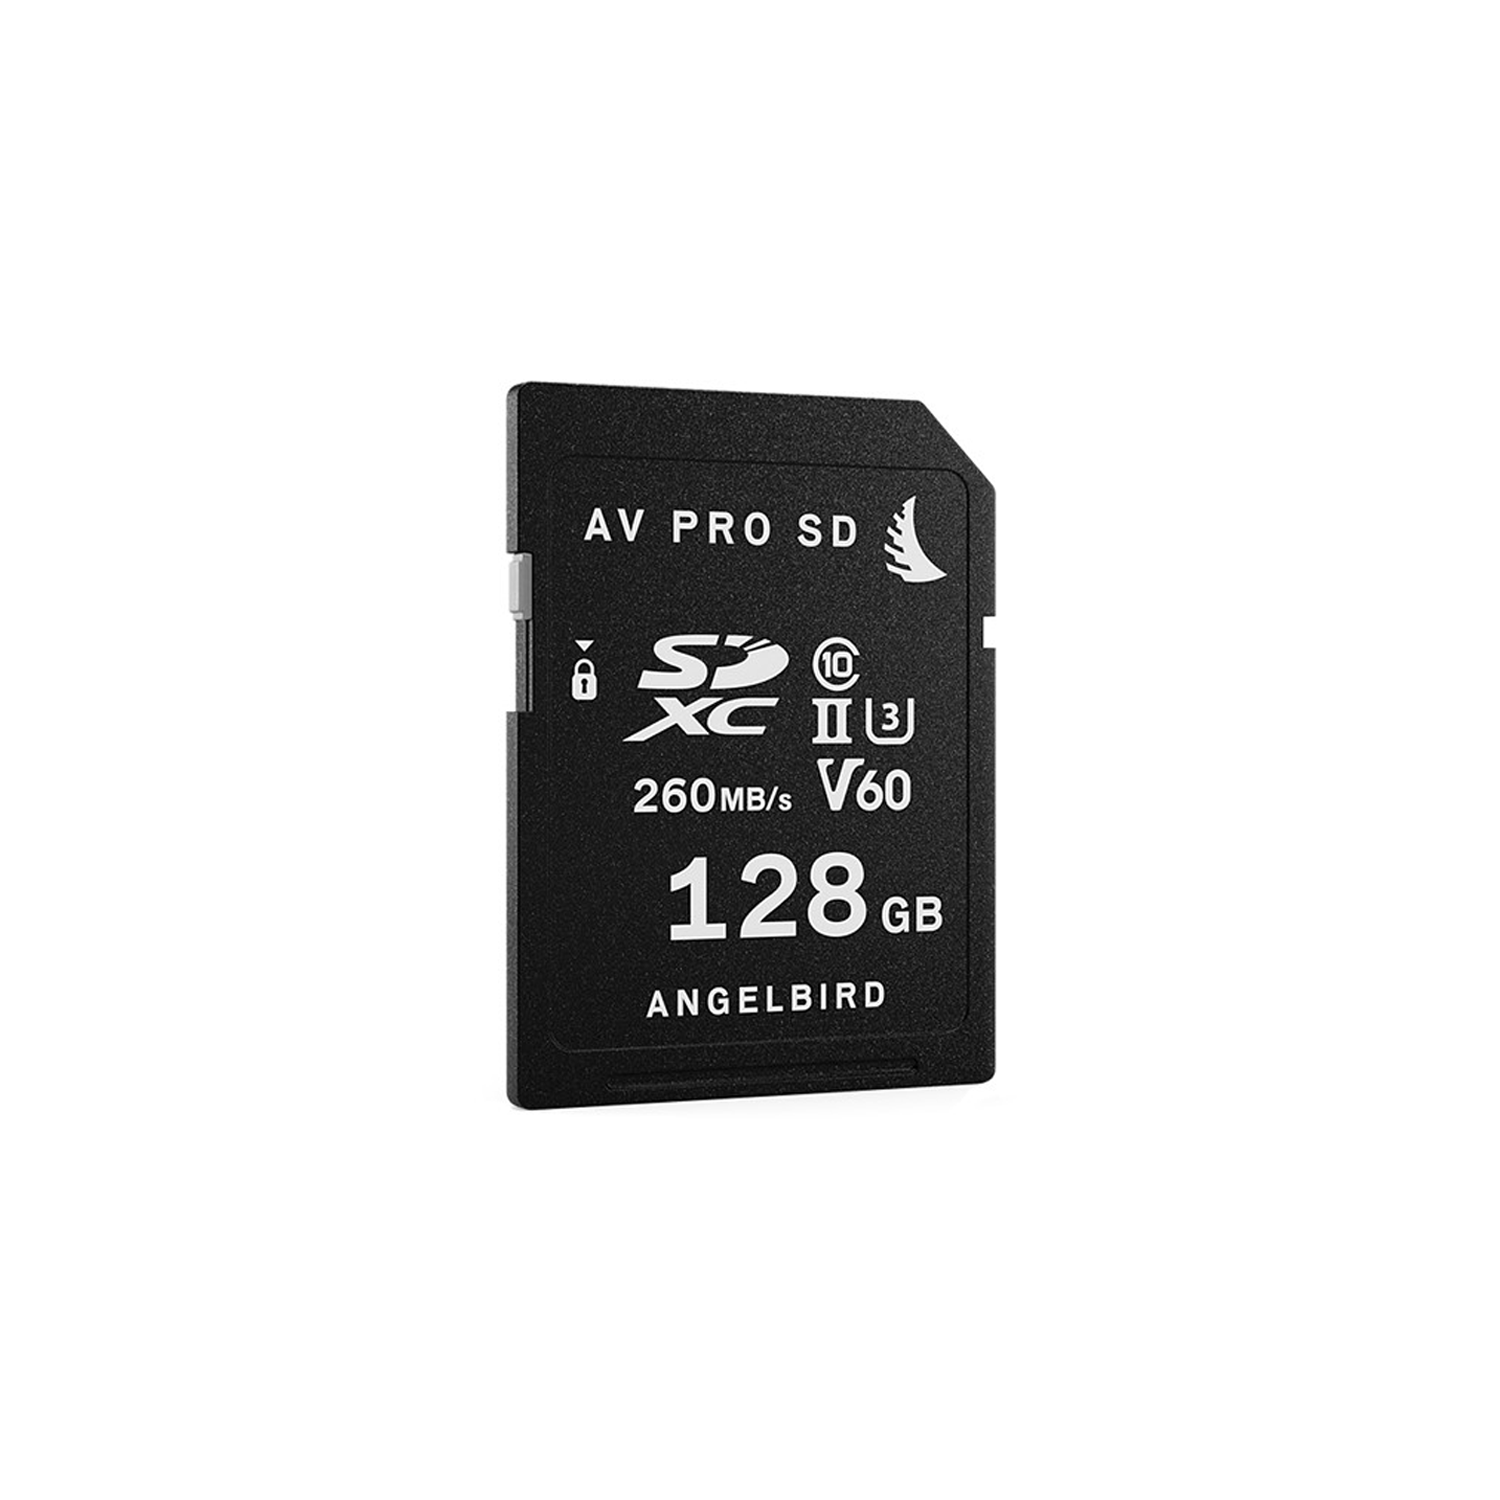 Angelbird AV Pro MK2 UHS-II SDXC Memory Card